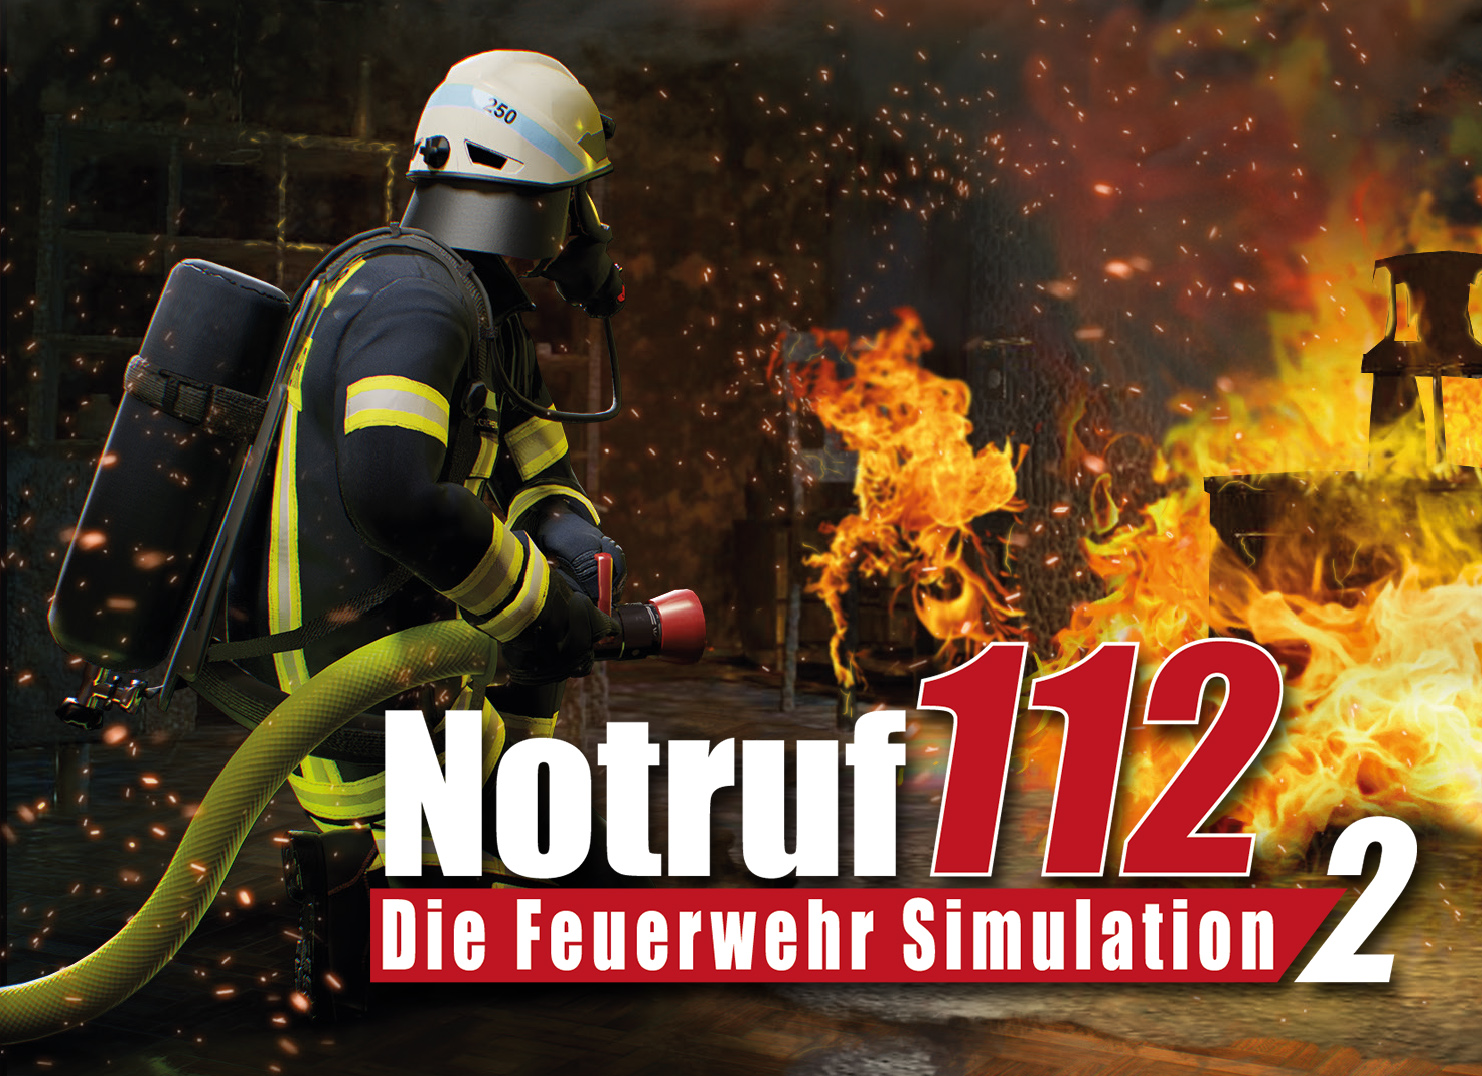 Feuerwehr so real wie SIMULATION noch 112 März DIE GENtv NOTRUF startet – im nie: 2 FEUERWEHR –